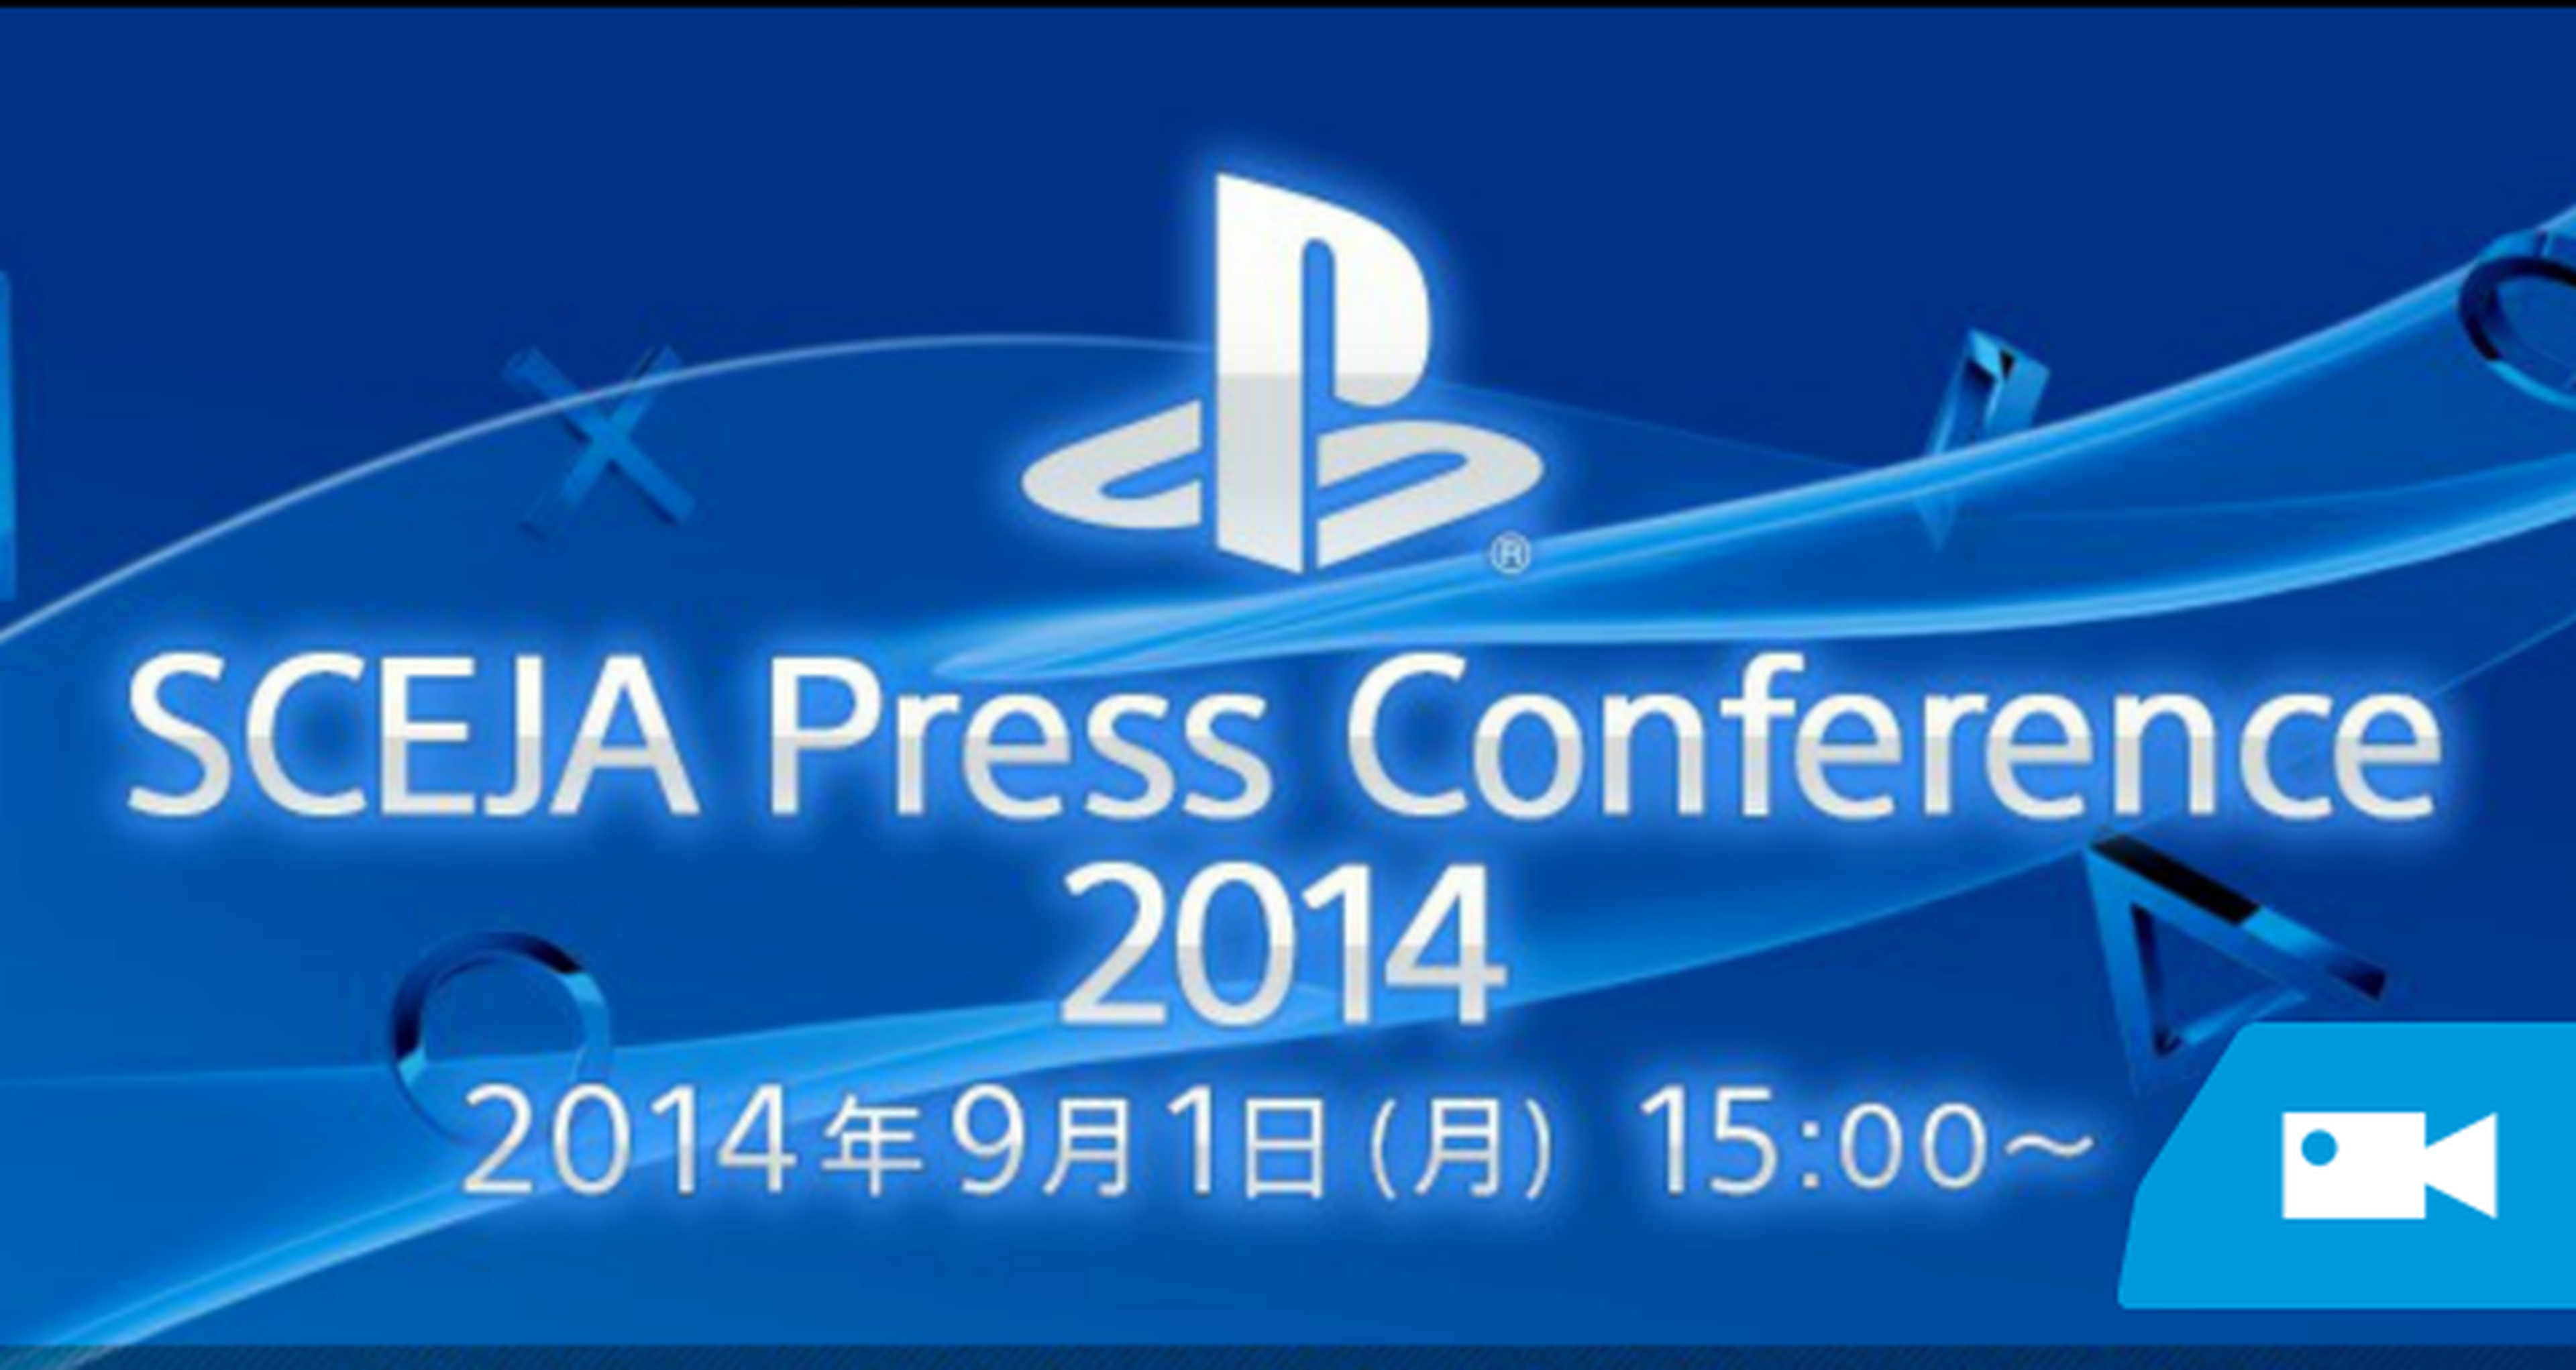 Sigue aquí en directo la conferencia de Sony previa a la Tokyo Game Show